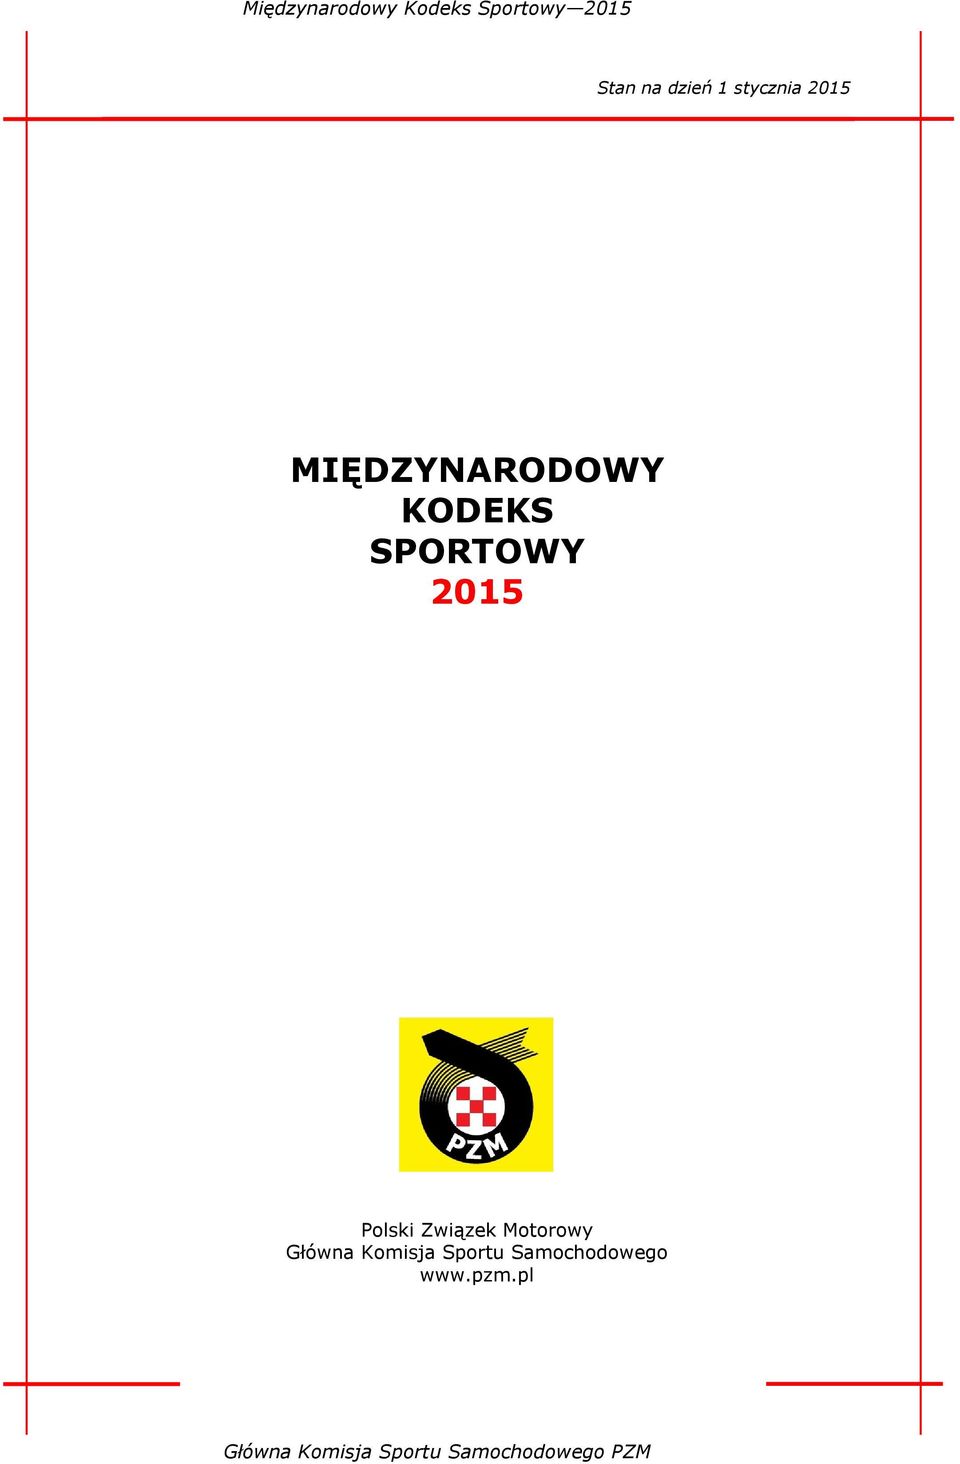 2015 Polski Związek Motorowy